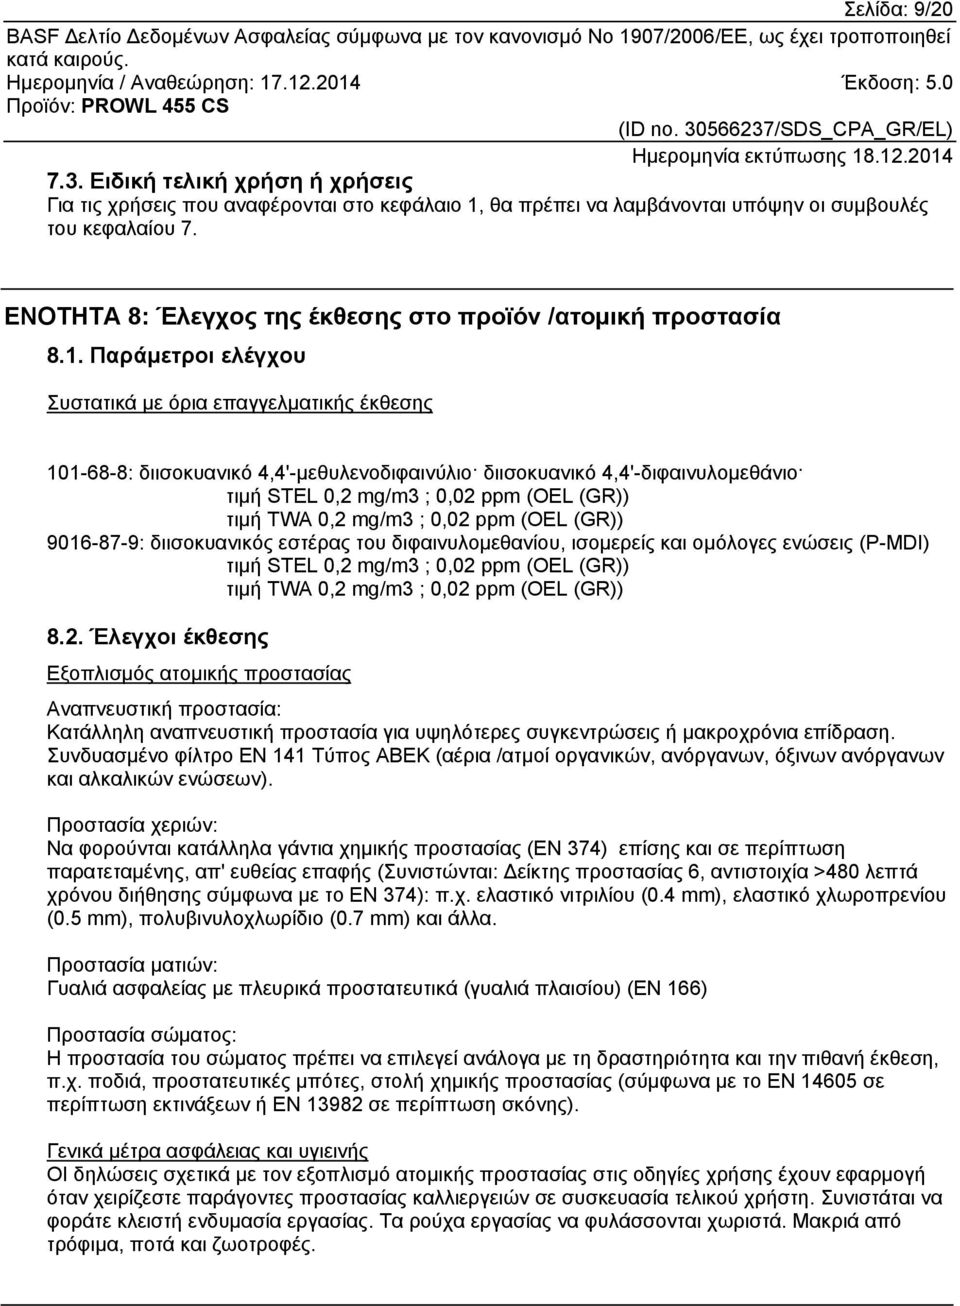 Παράμετροι ελέγχου Συστατικά με όρια επαγγελματικής έκθεσης 101-68-8: διισοκυανικό 4,4'-μεθυλενοδιφαινύλιο διισοκυανικό 4,4'-διφαινυλομεθάνιο τιμή STEL 0,2 mg/m3 ; 0,02 ppm (OEL (GR)) τιμή TWA 0,2